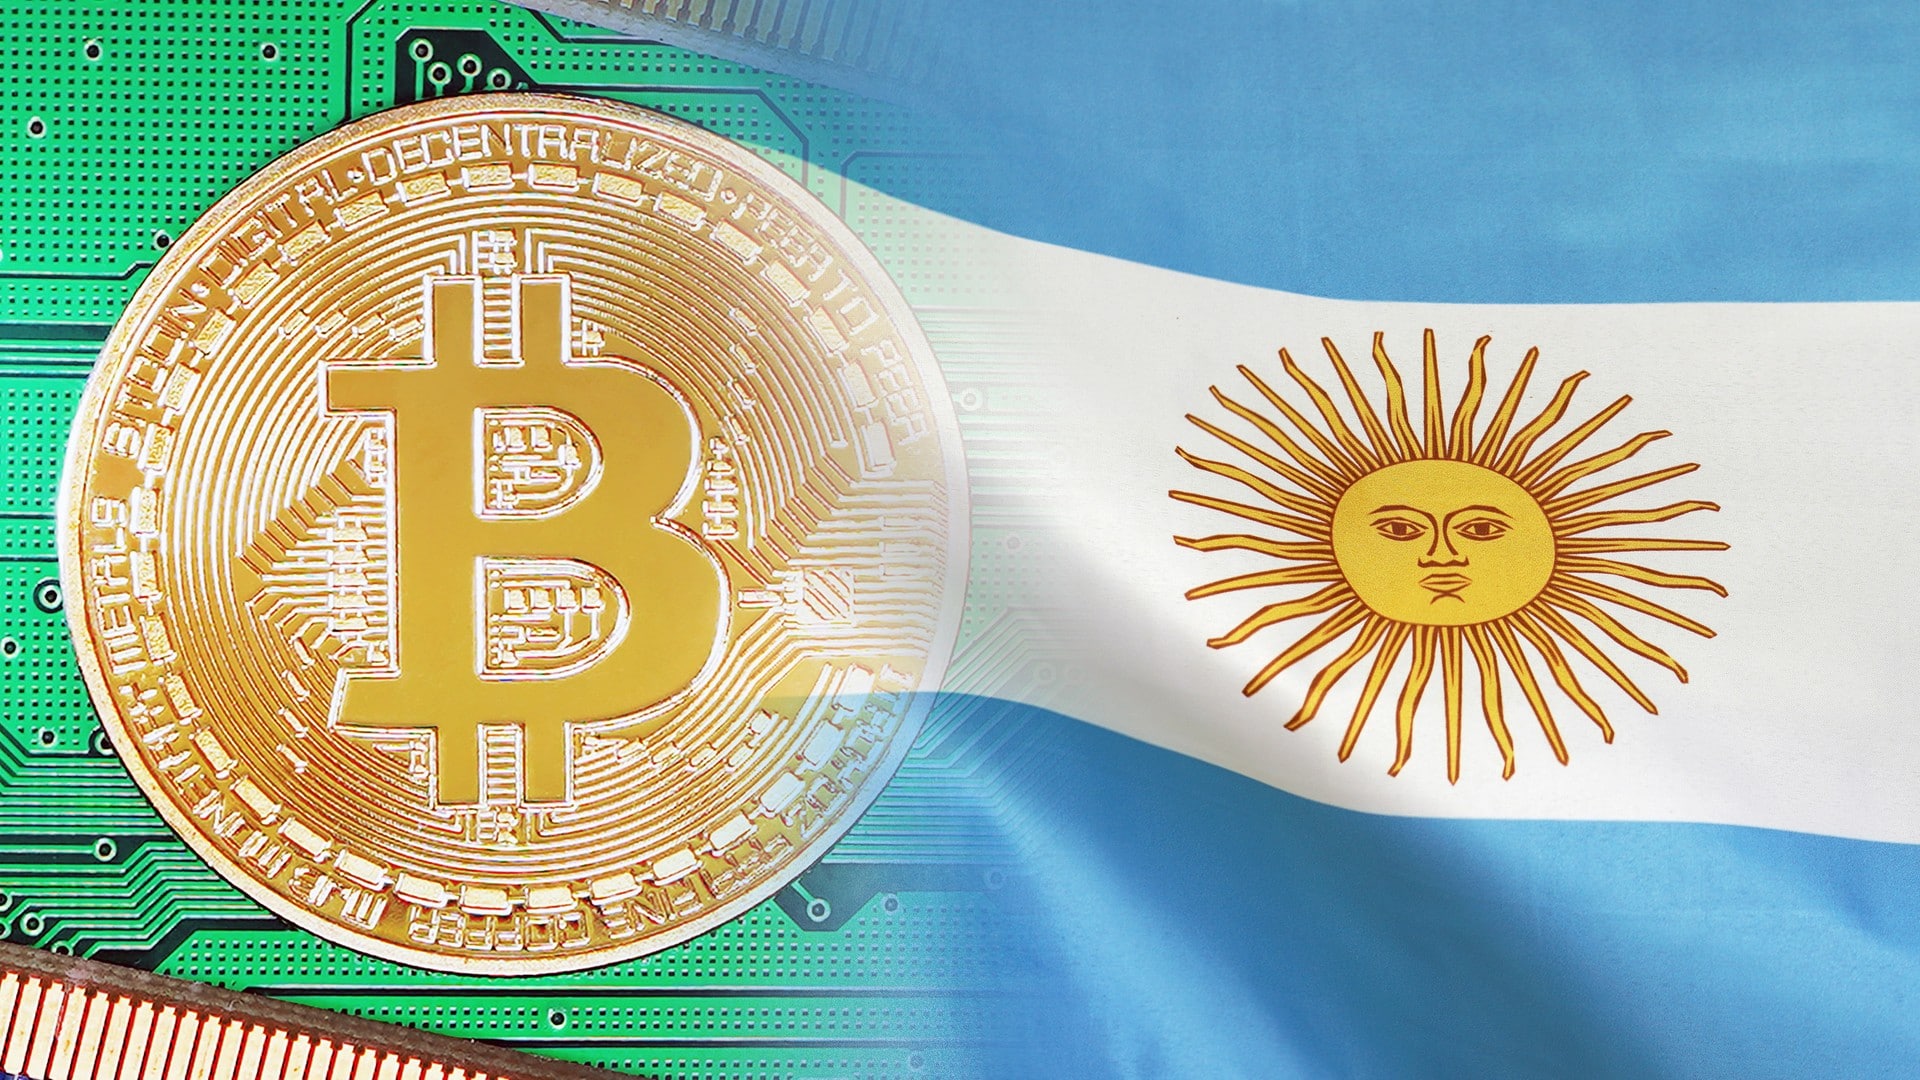 Cidade argentina vai minerar criptomoedas para se financiar